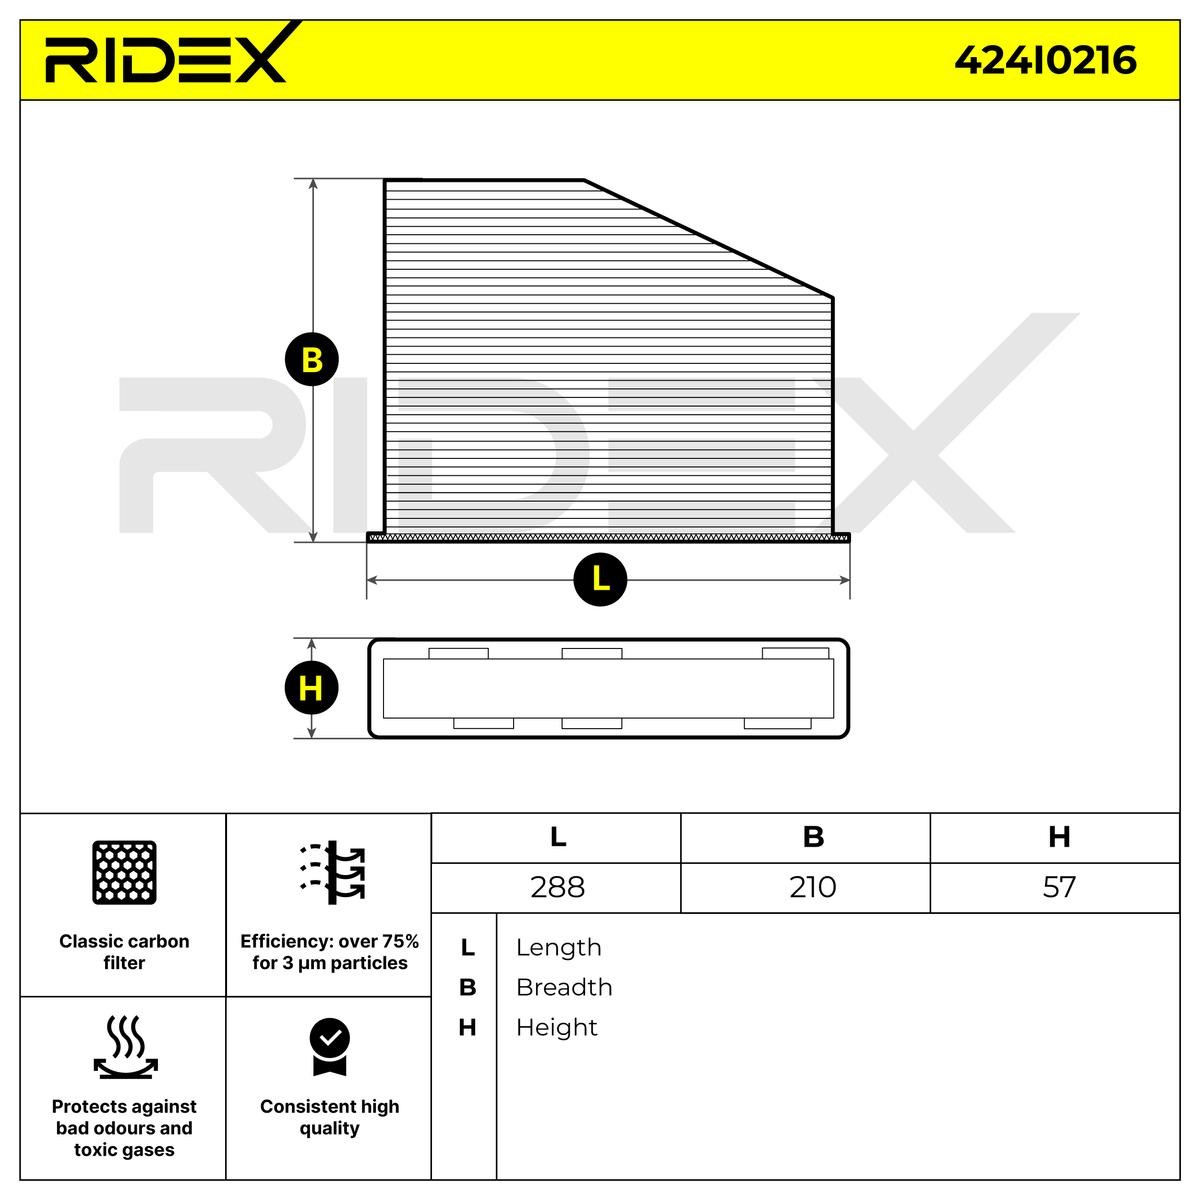 RIDEX Air conditioning filter 424I0216